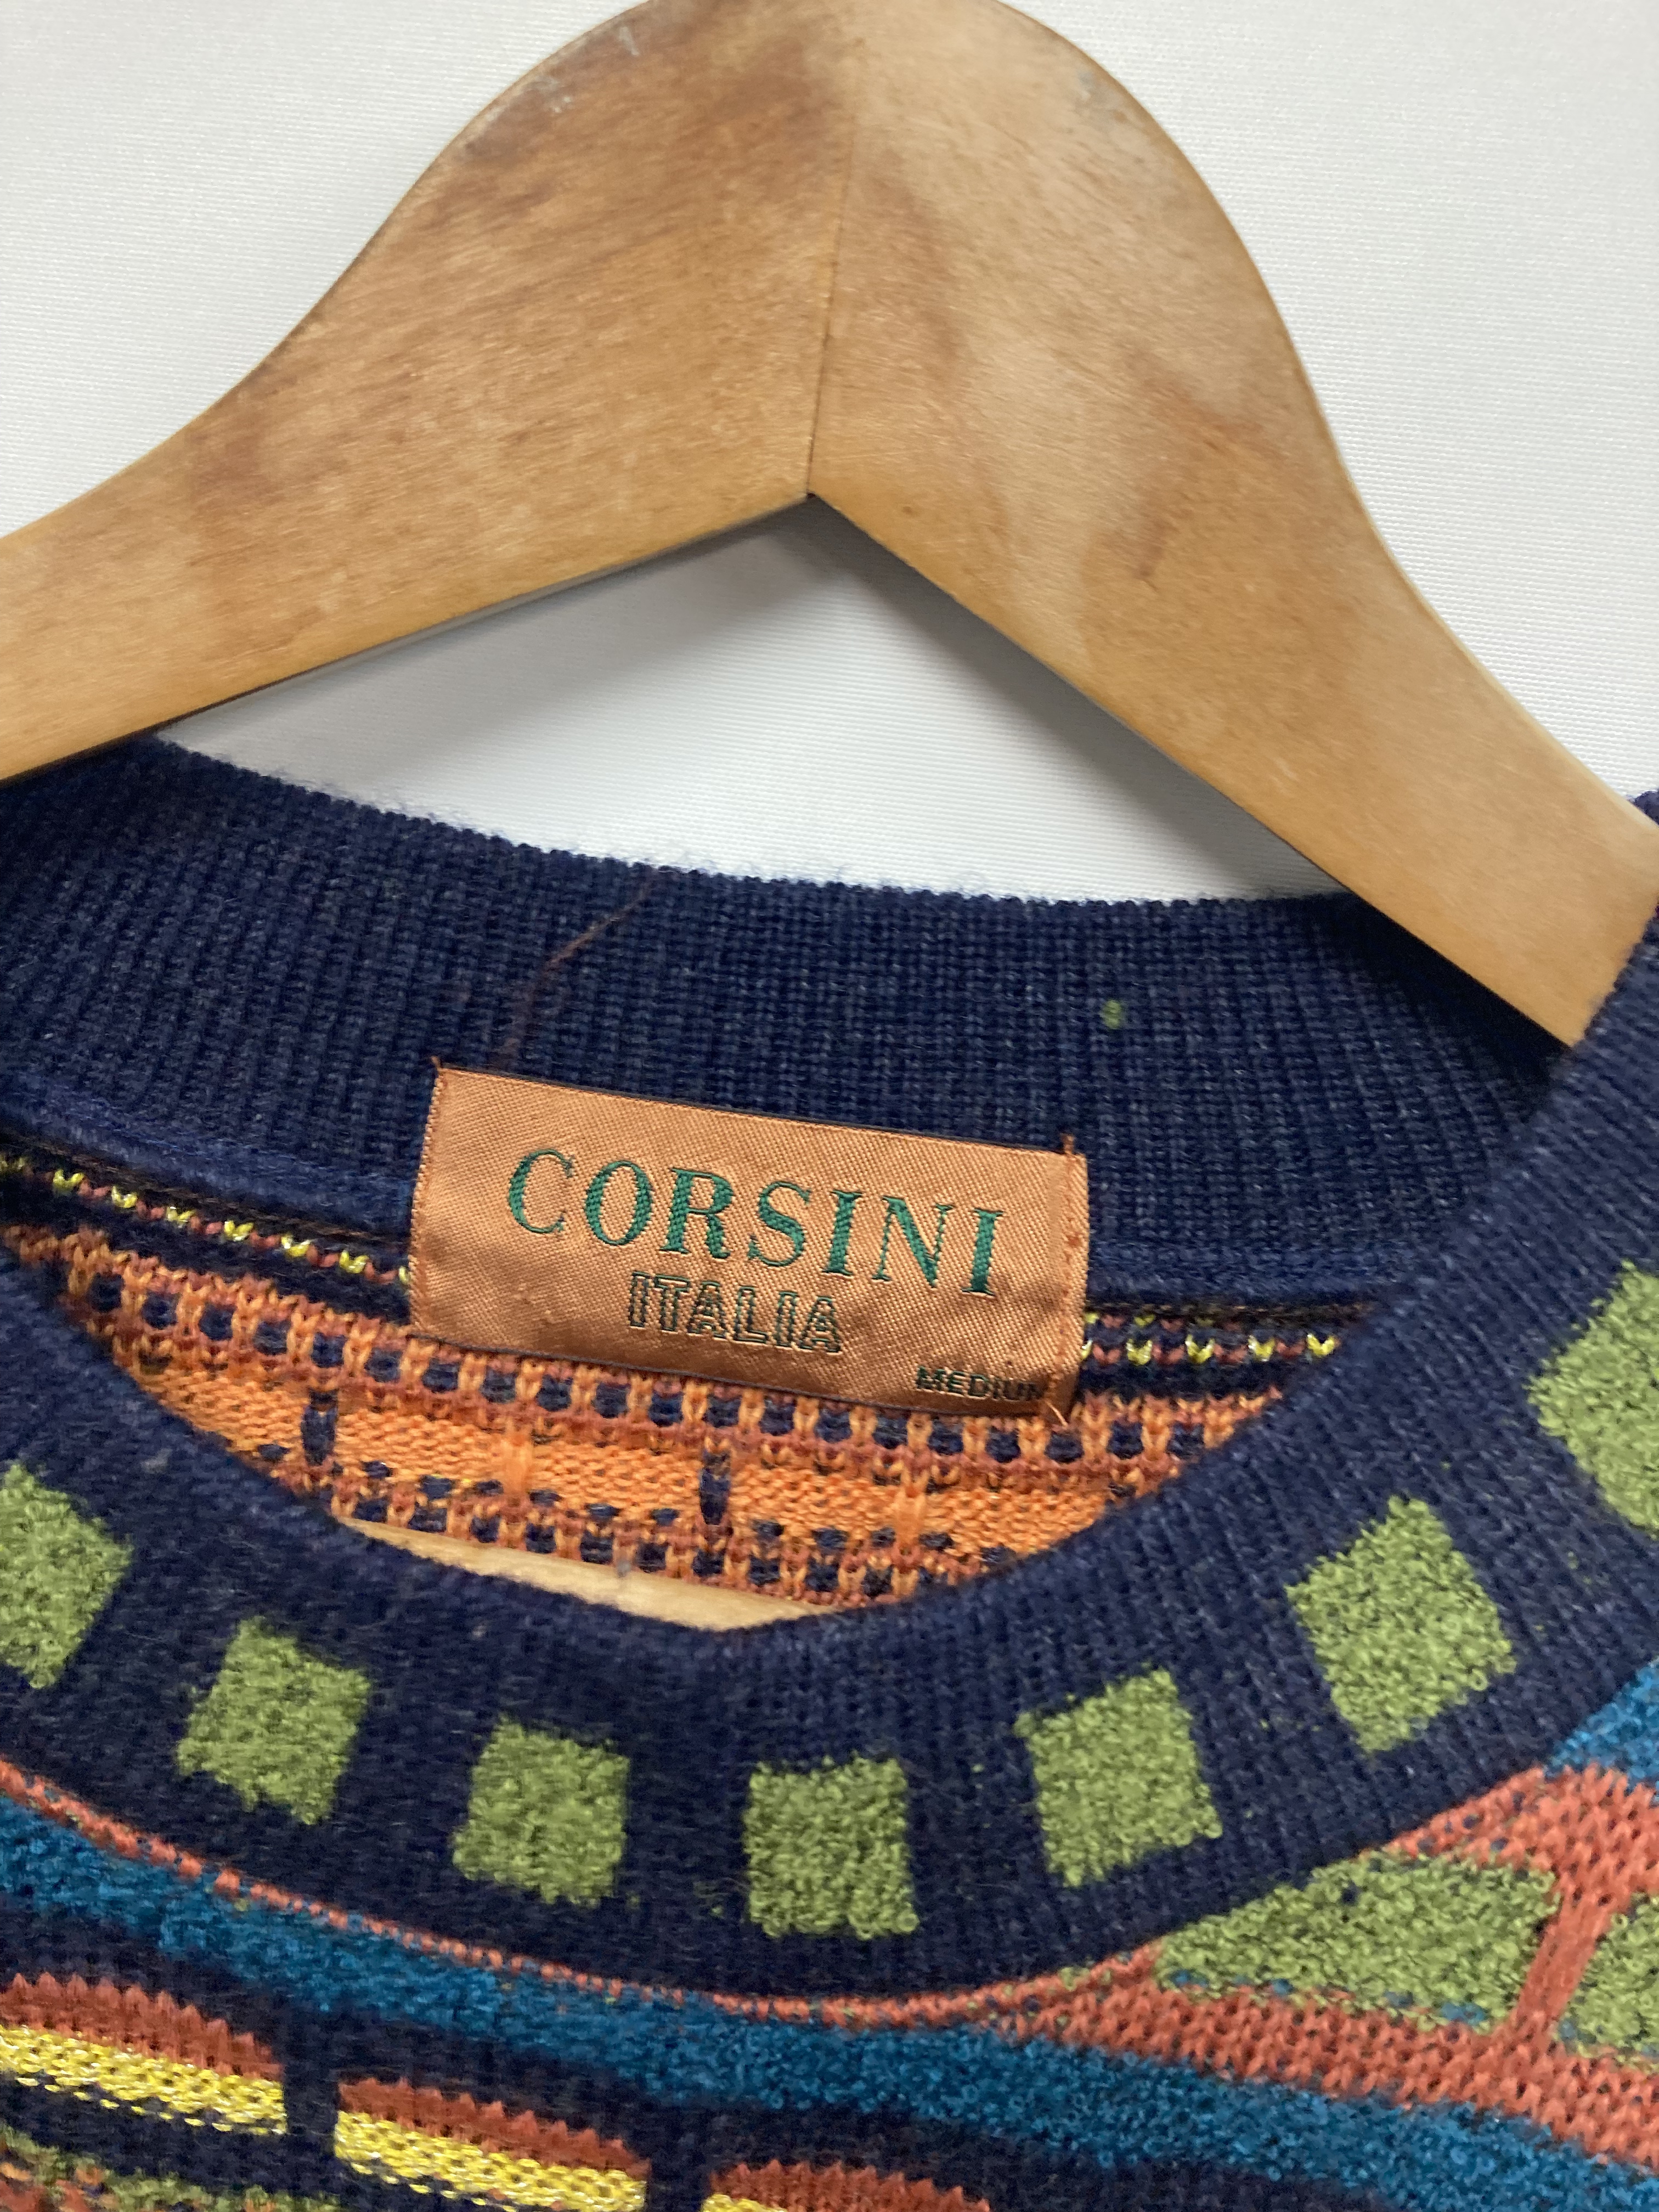 【日本製】CORSINI 3D コットン ニット セーター  レトロ